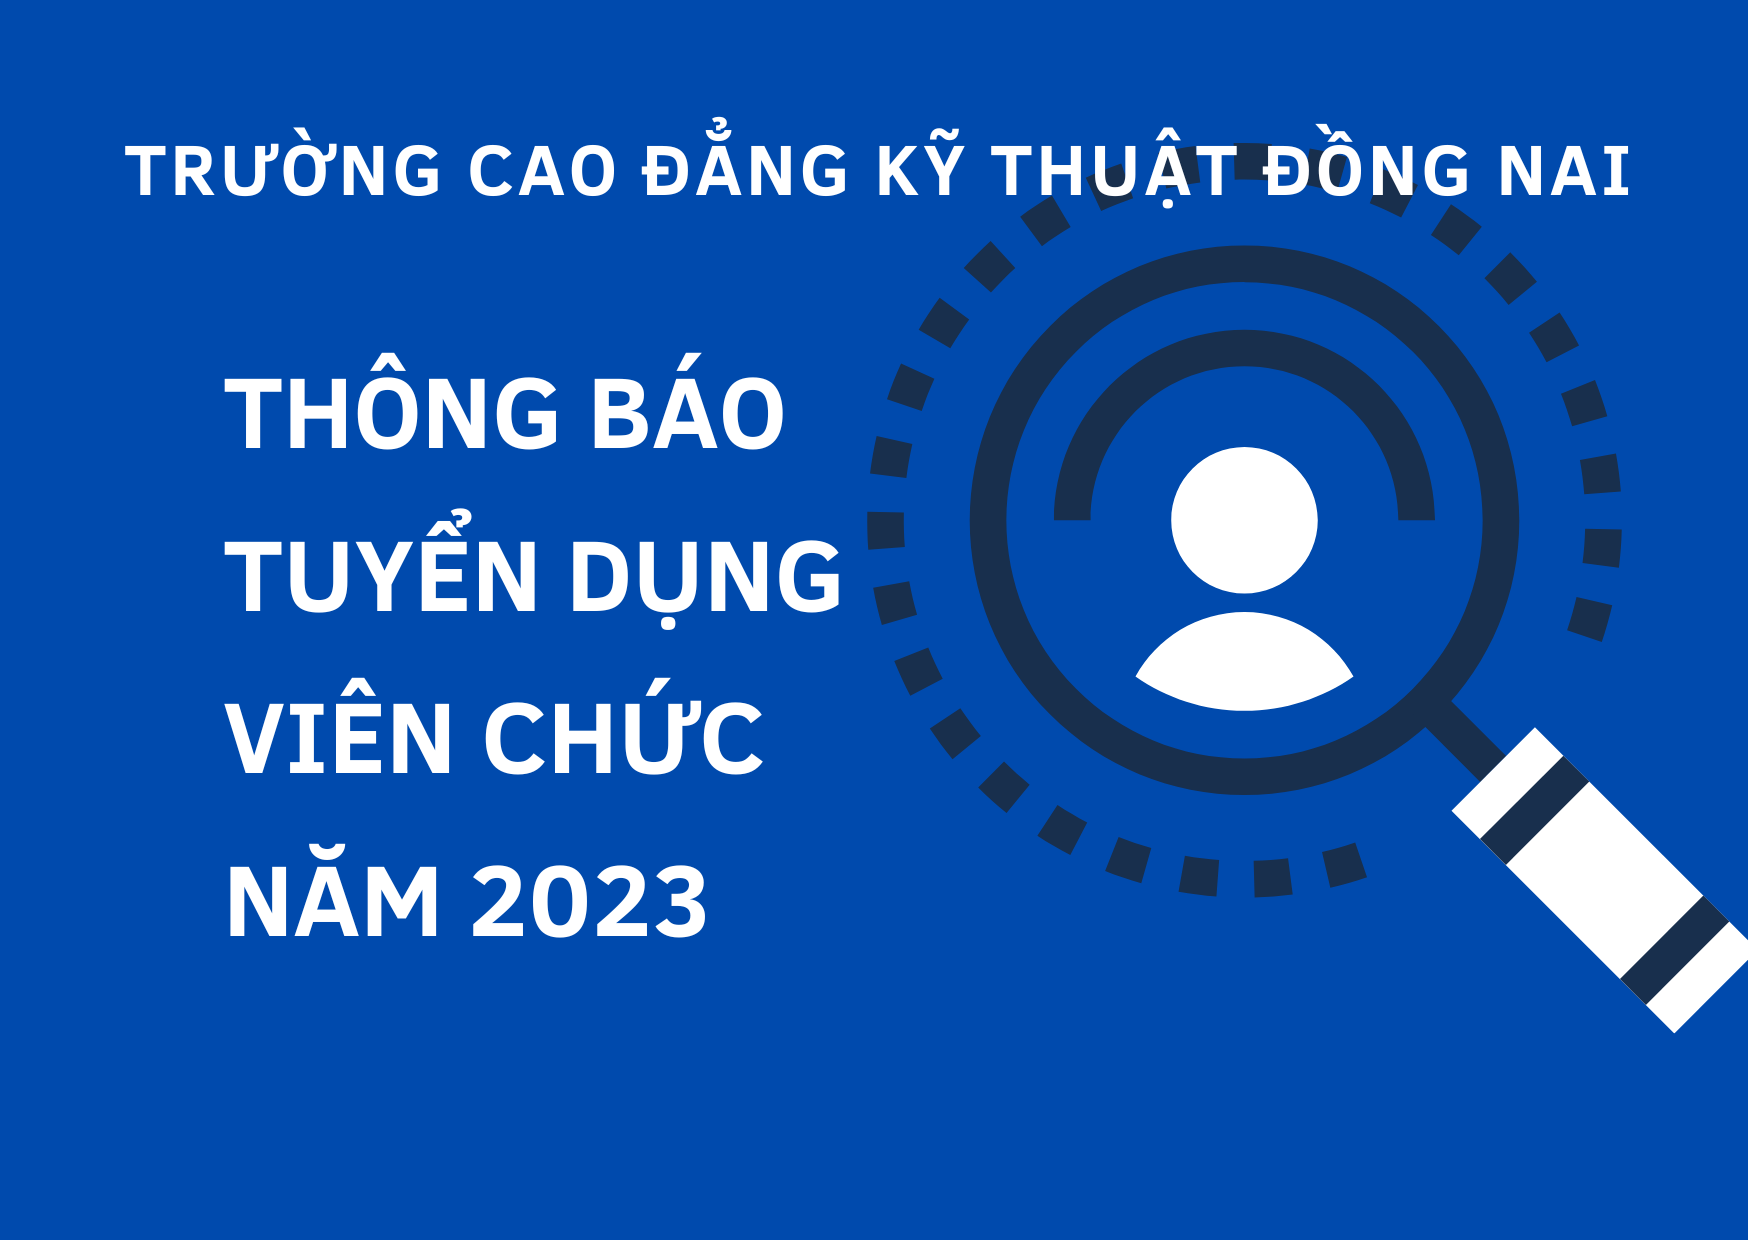 Trường cao đẳng Kỹ thuật Đồng Nai thông báo tuyển dụng viên chức năm 2023